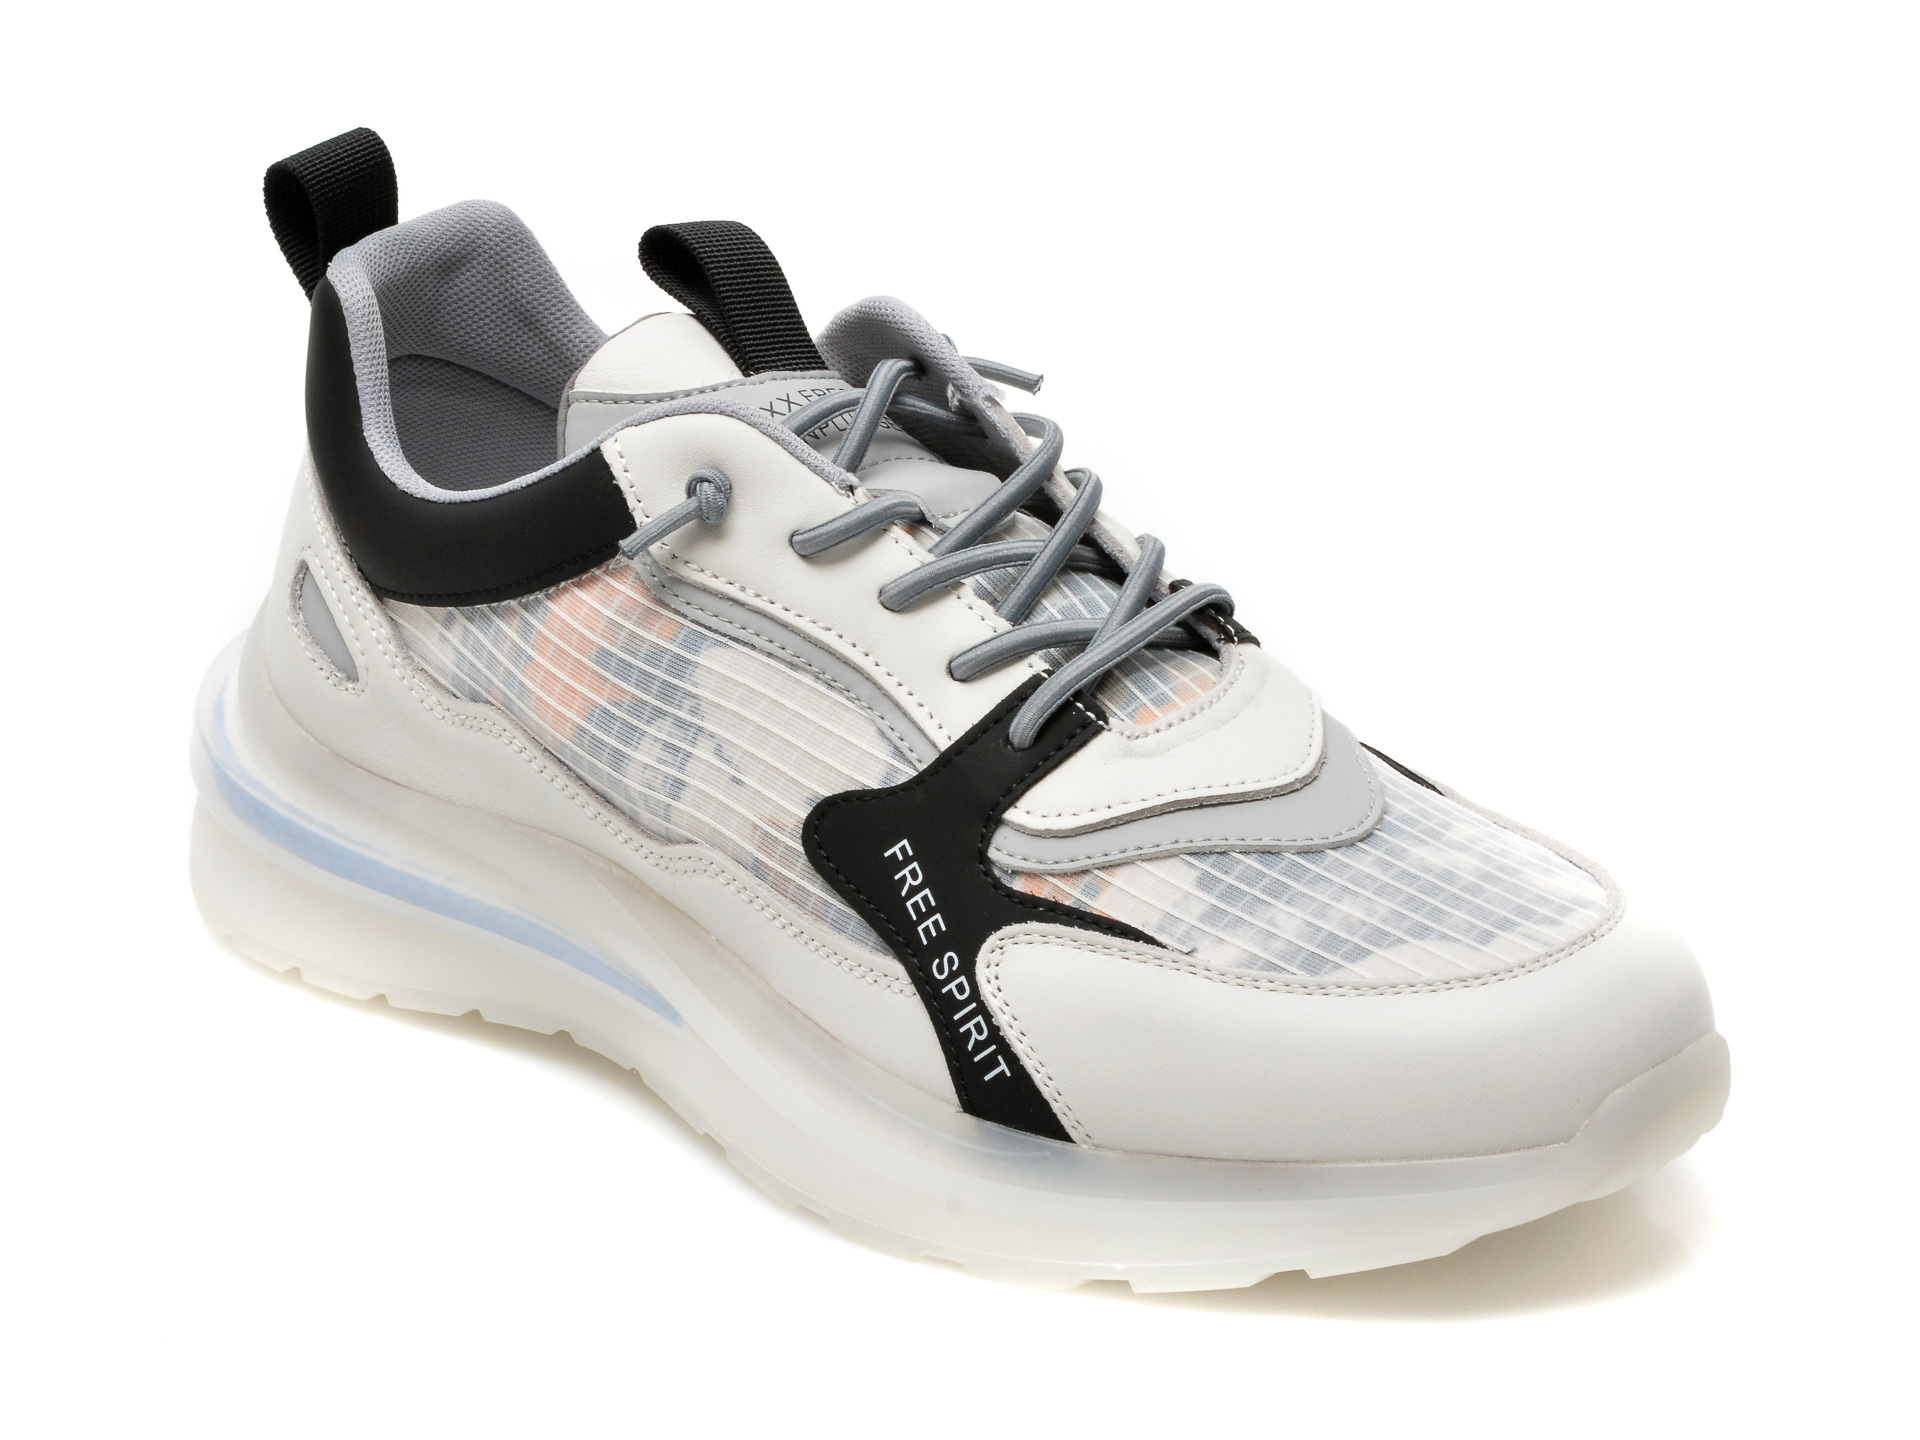 Pantofi sport GRYXX albi, 9089, din material textil si piele naturala Gryxx Gryxx